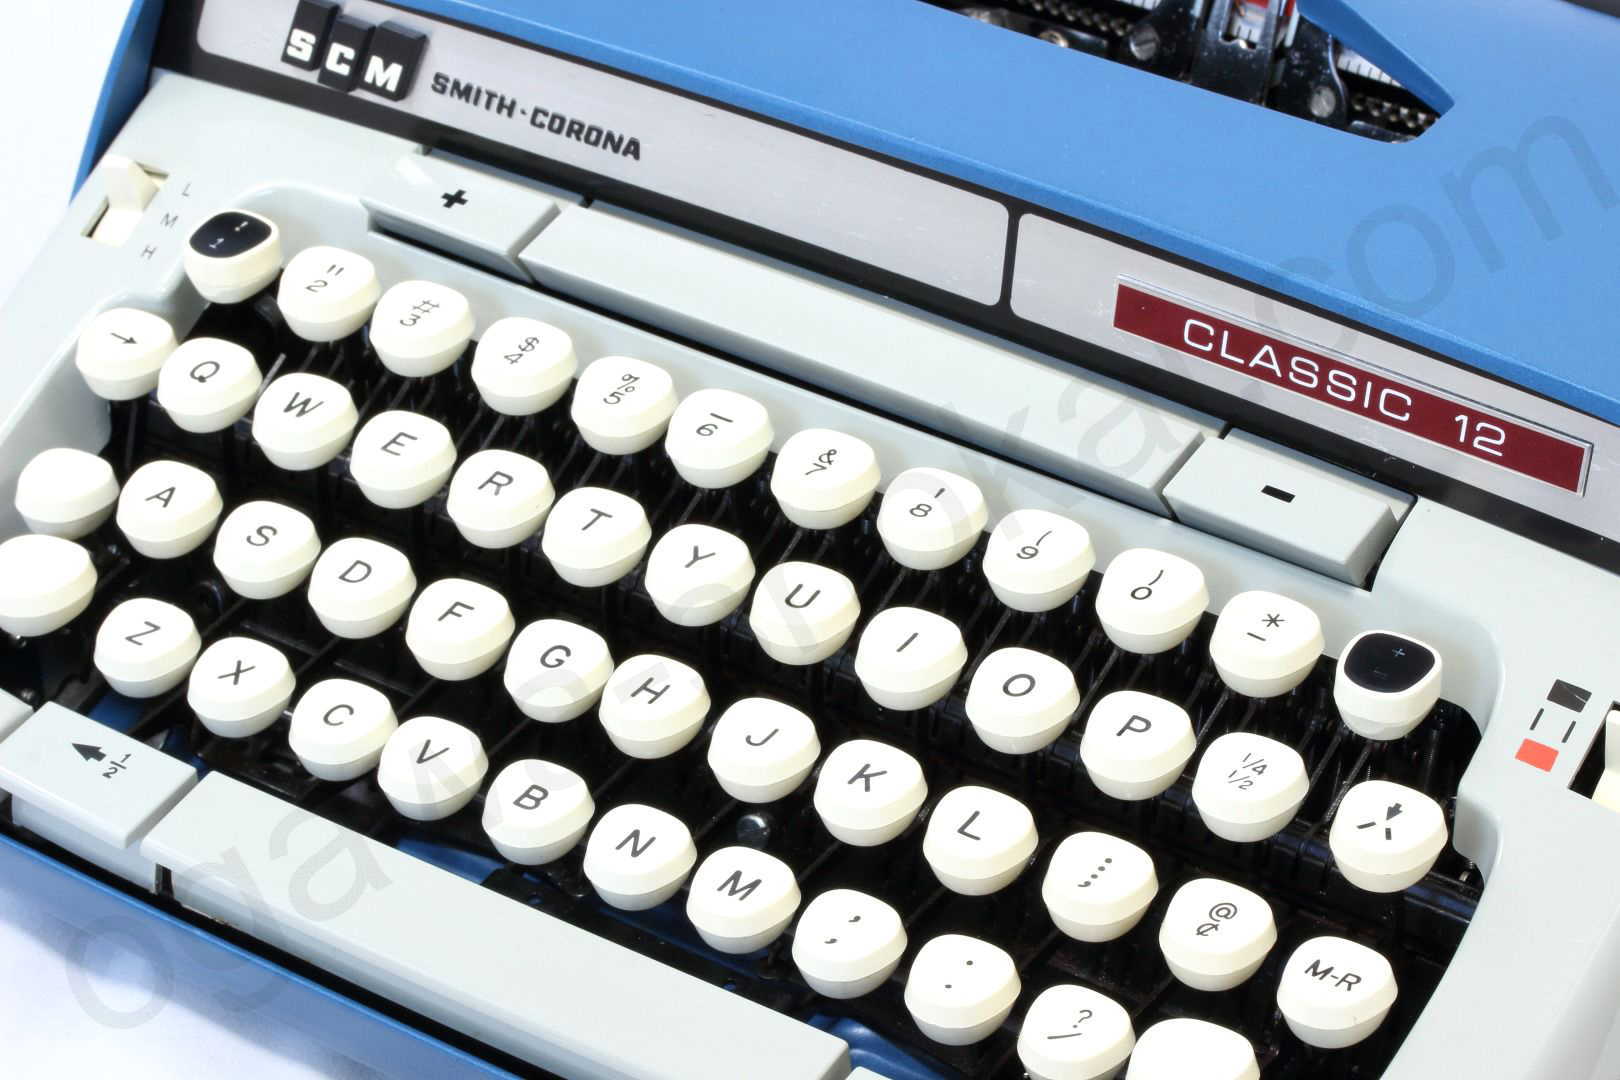 アメリカSMITH CORONA社のCLASSIC 12はクラシカルなデザインとスタイリングが人気のタイプライターです。